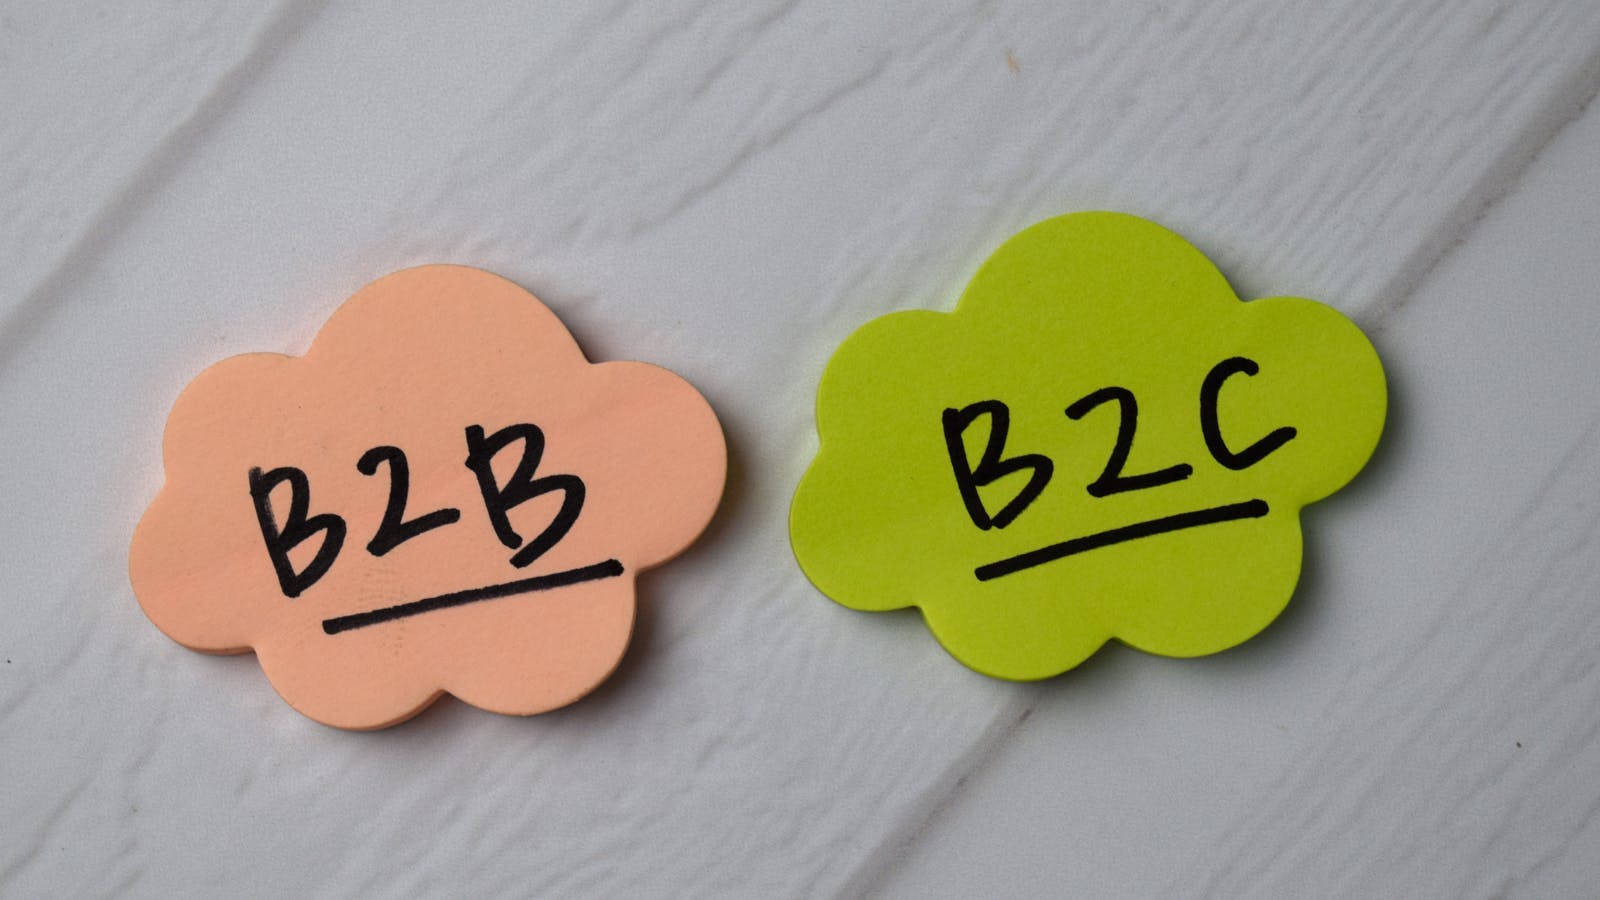 Un visuel avec la différence entre B2B et B2C